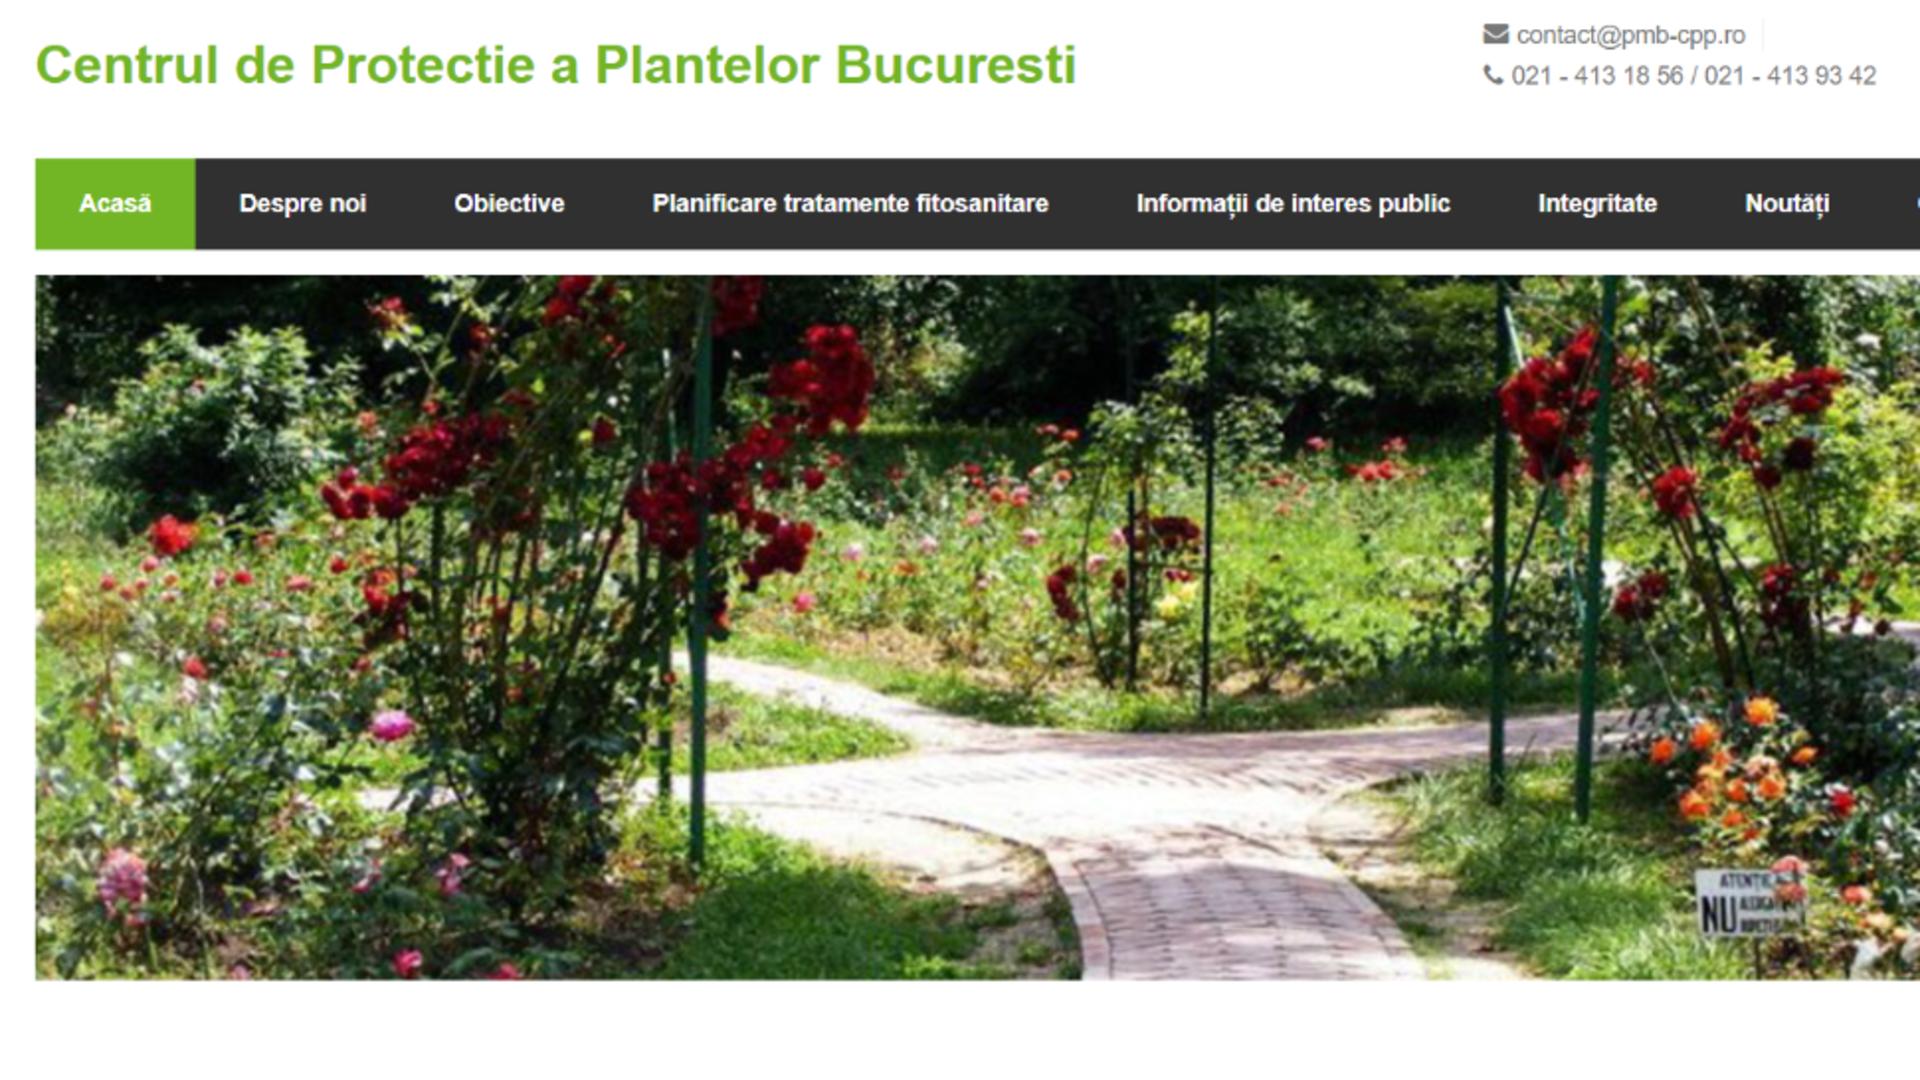 Site-ul Centrului de Protecție a Plantelor București